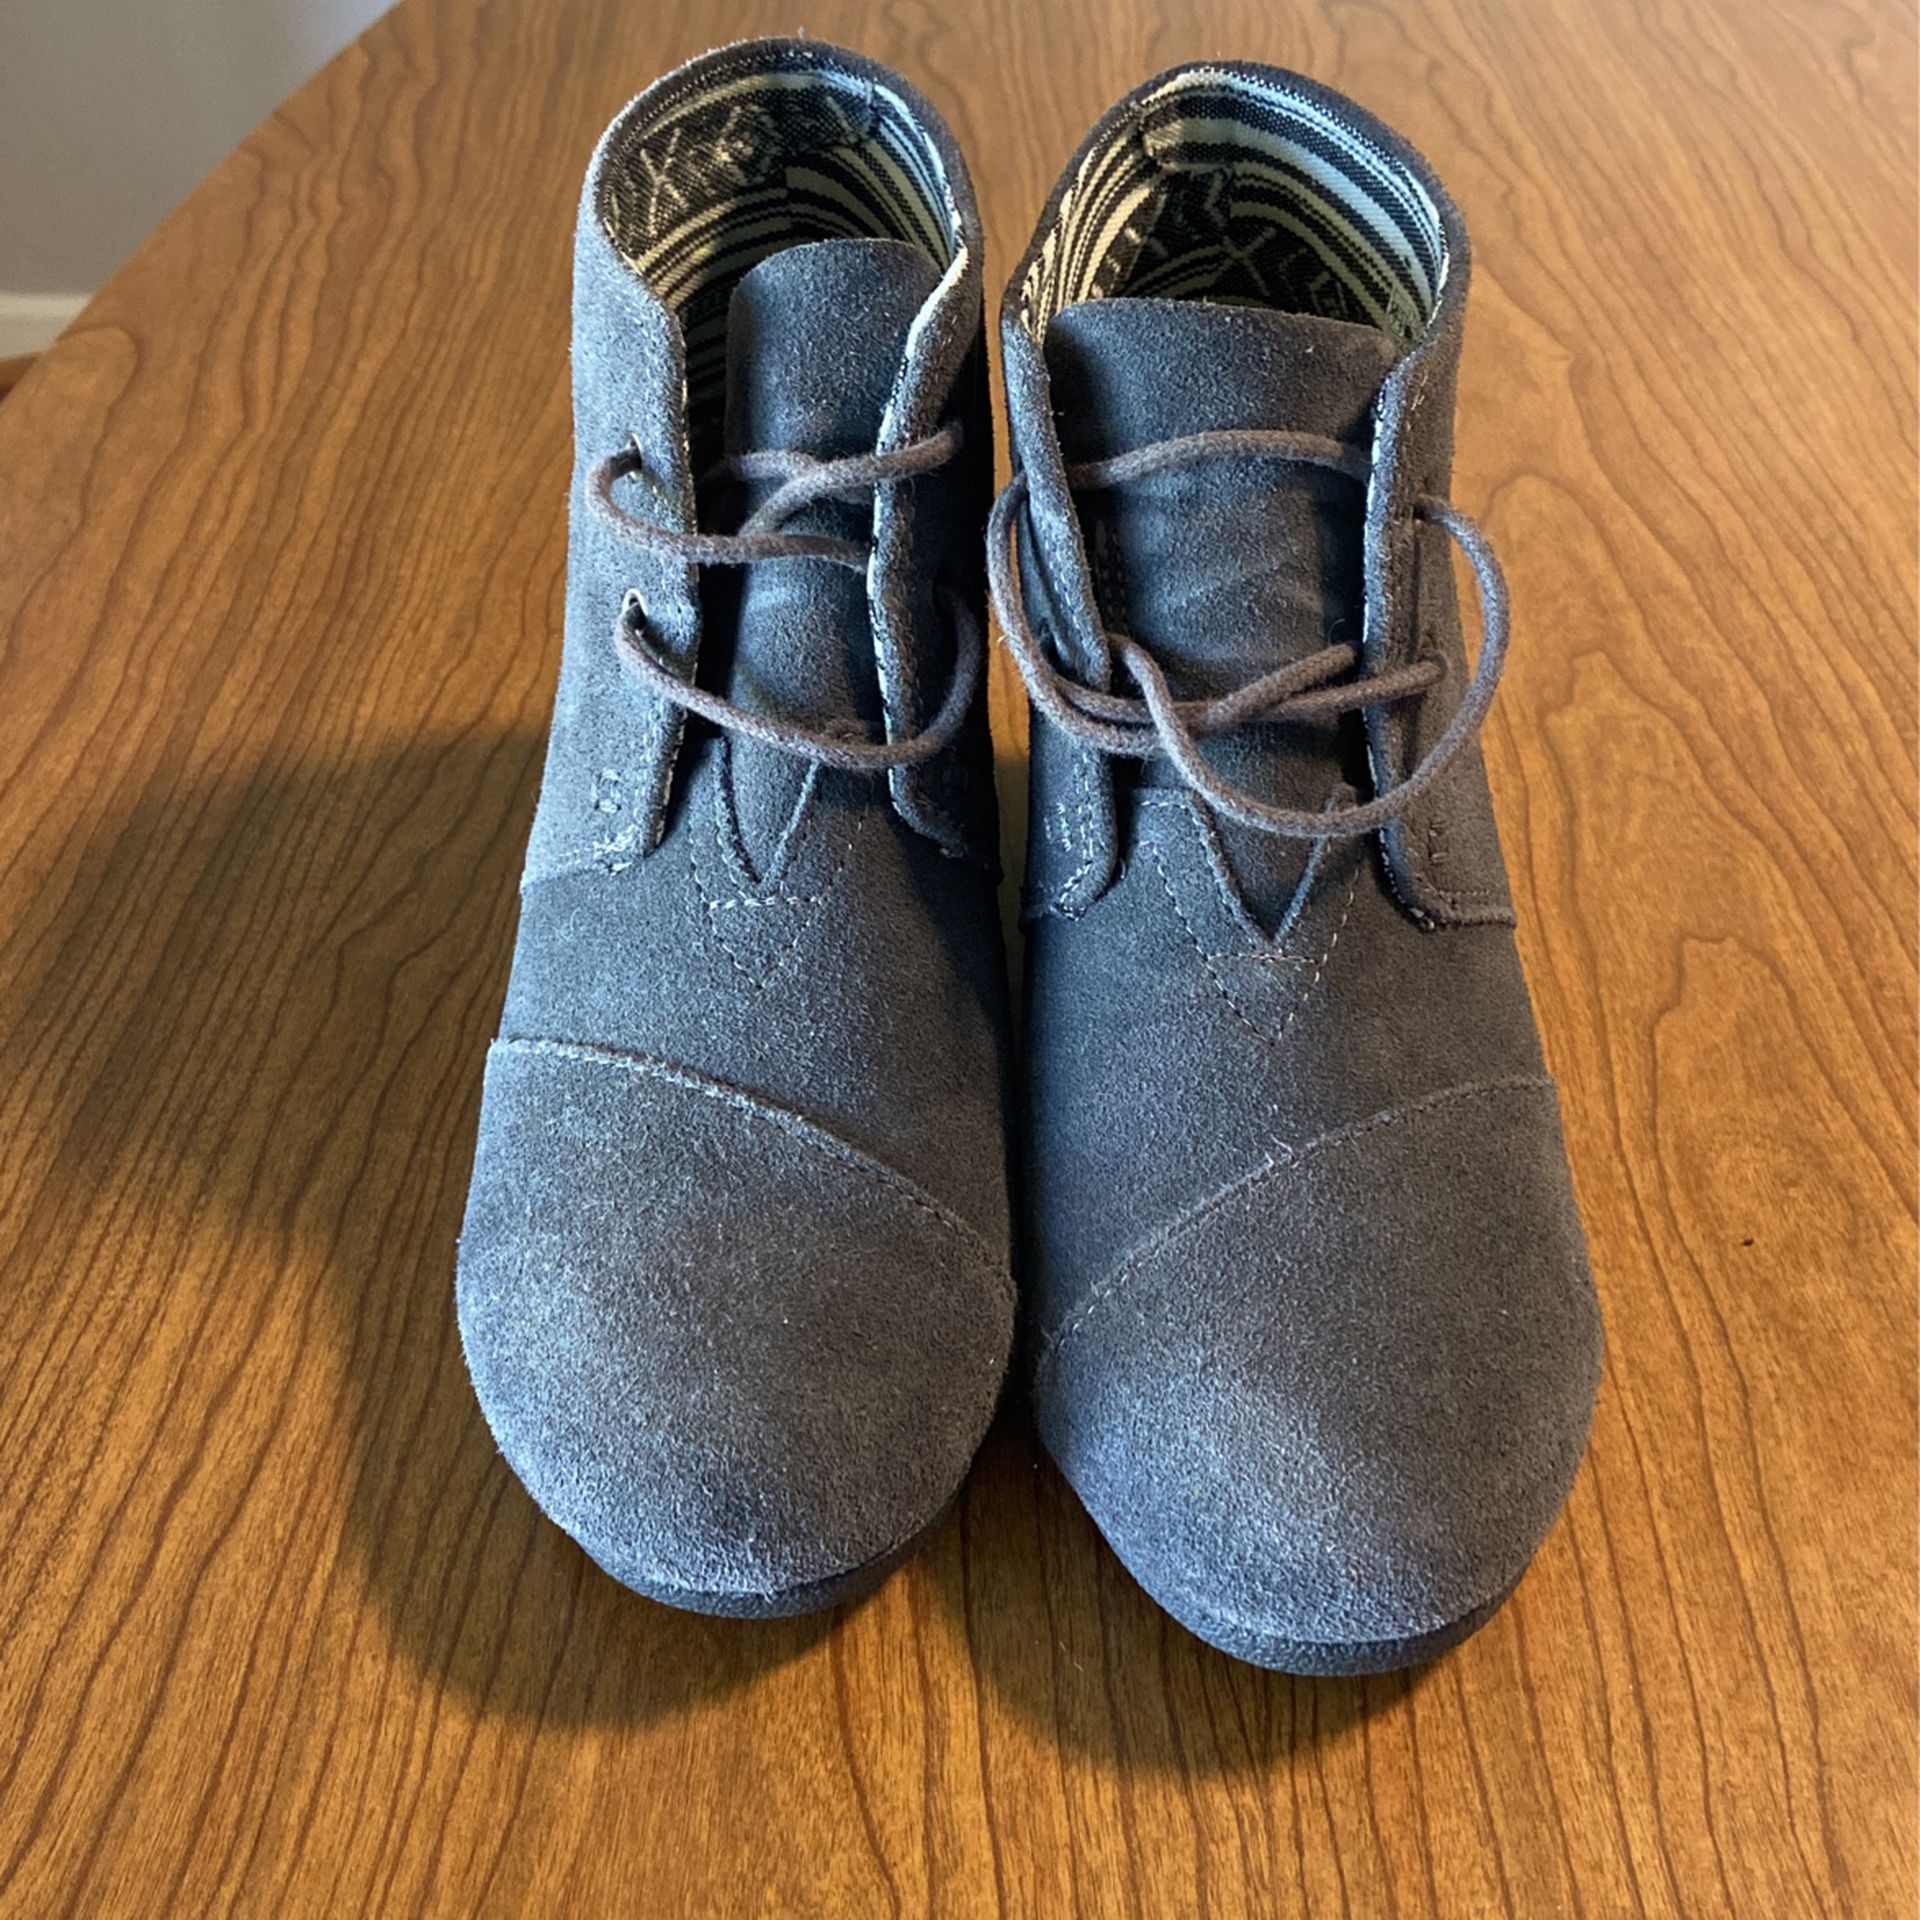 TOMS desert wedge heel shoes Size 7.5 gray